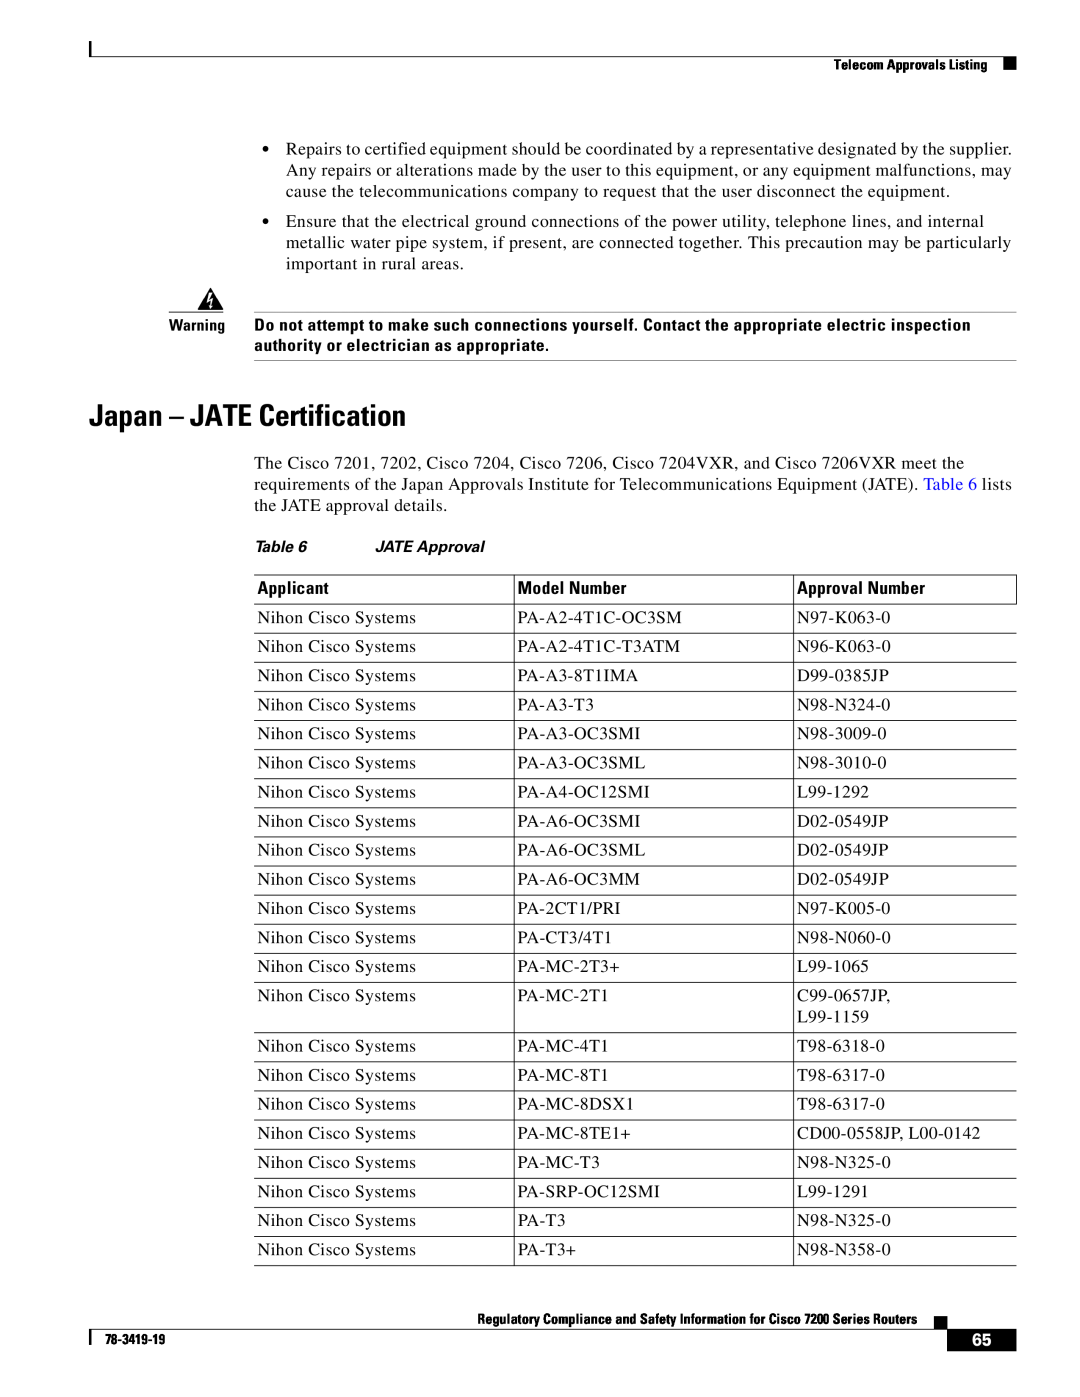 Cisco Systems 7200 Series, 7206 VXR, 7204 VXR, 7202 manual Japan - JATE Certification, JATE Approval 